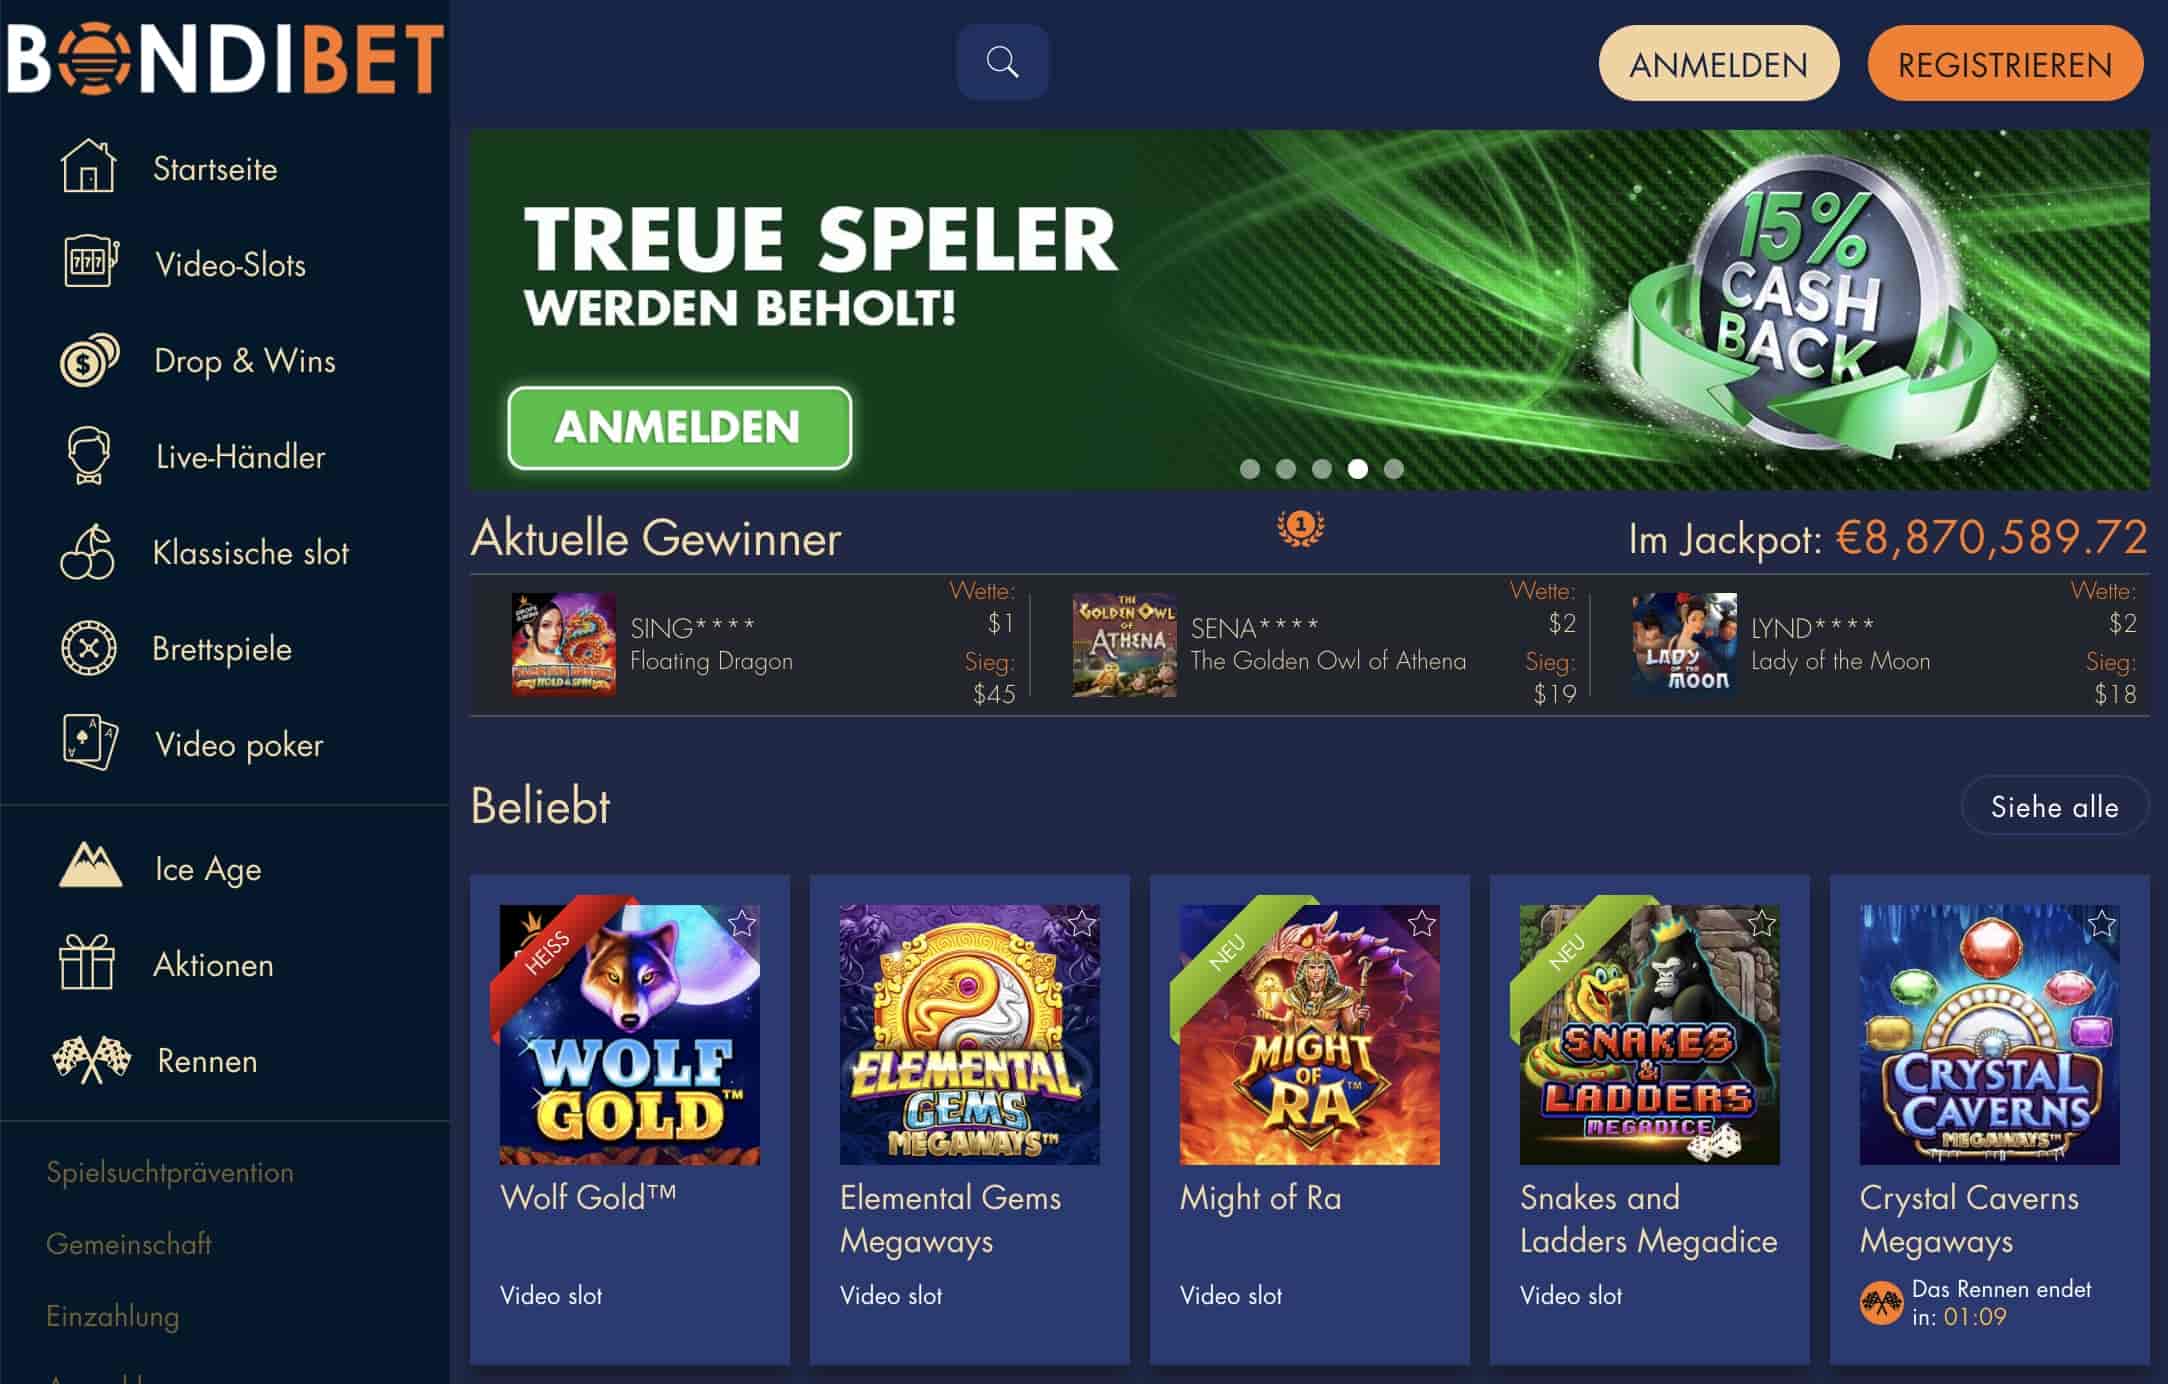  Bondibet Casino Homepage